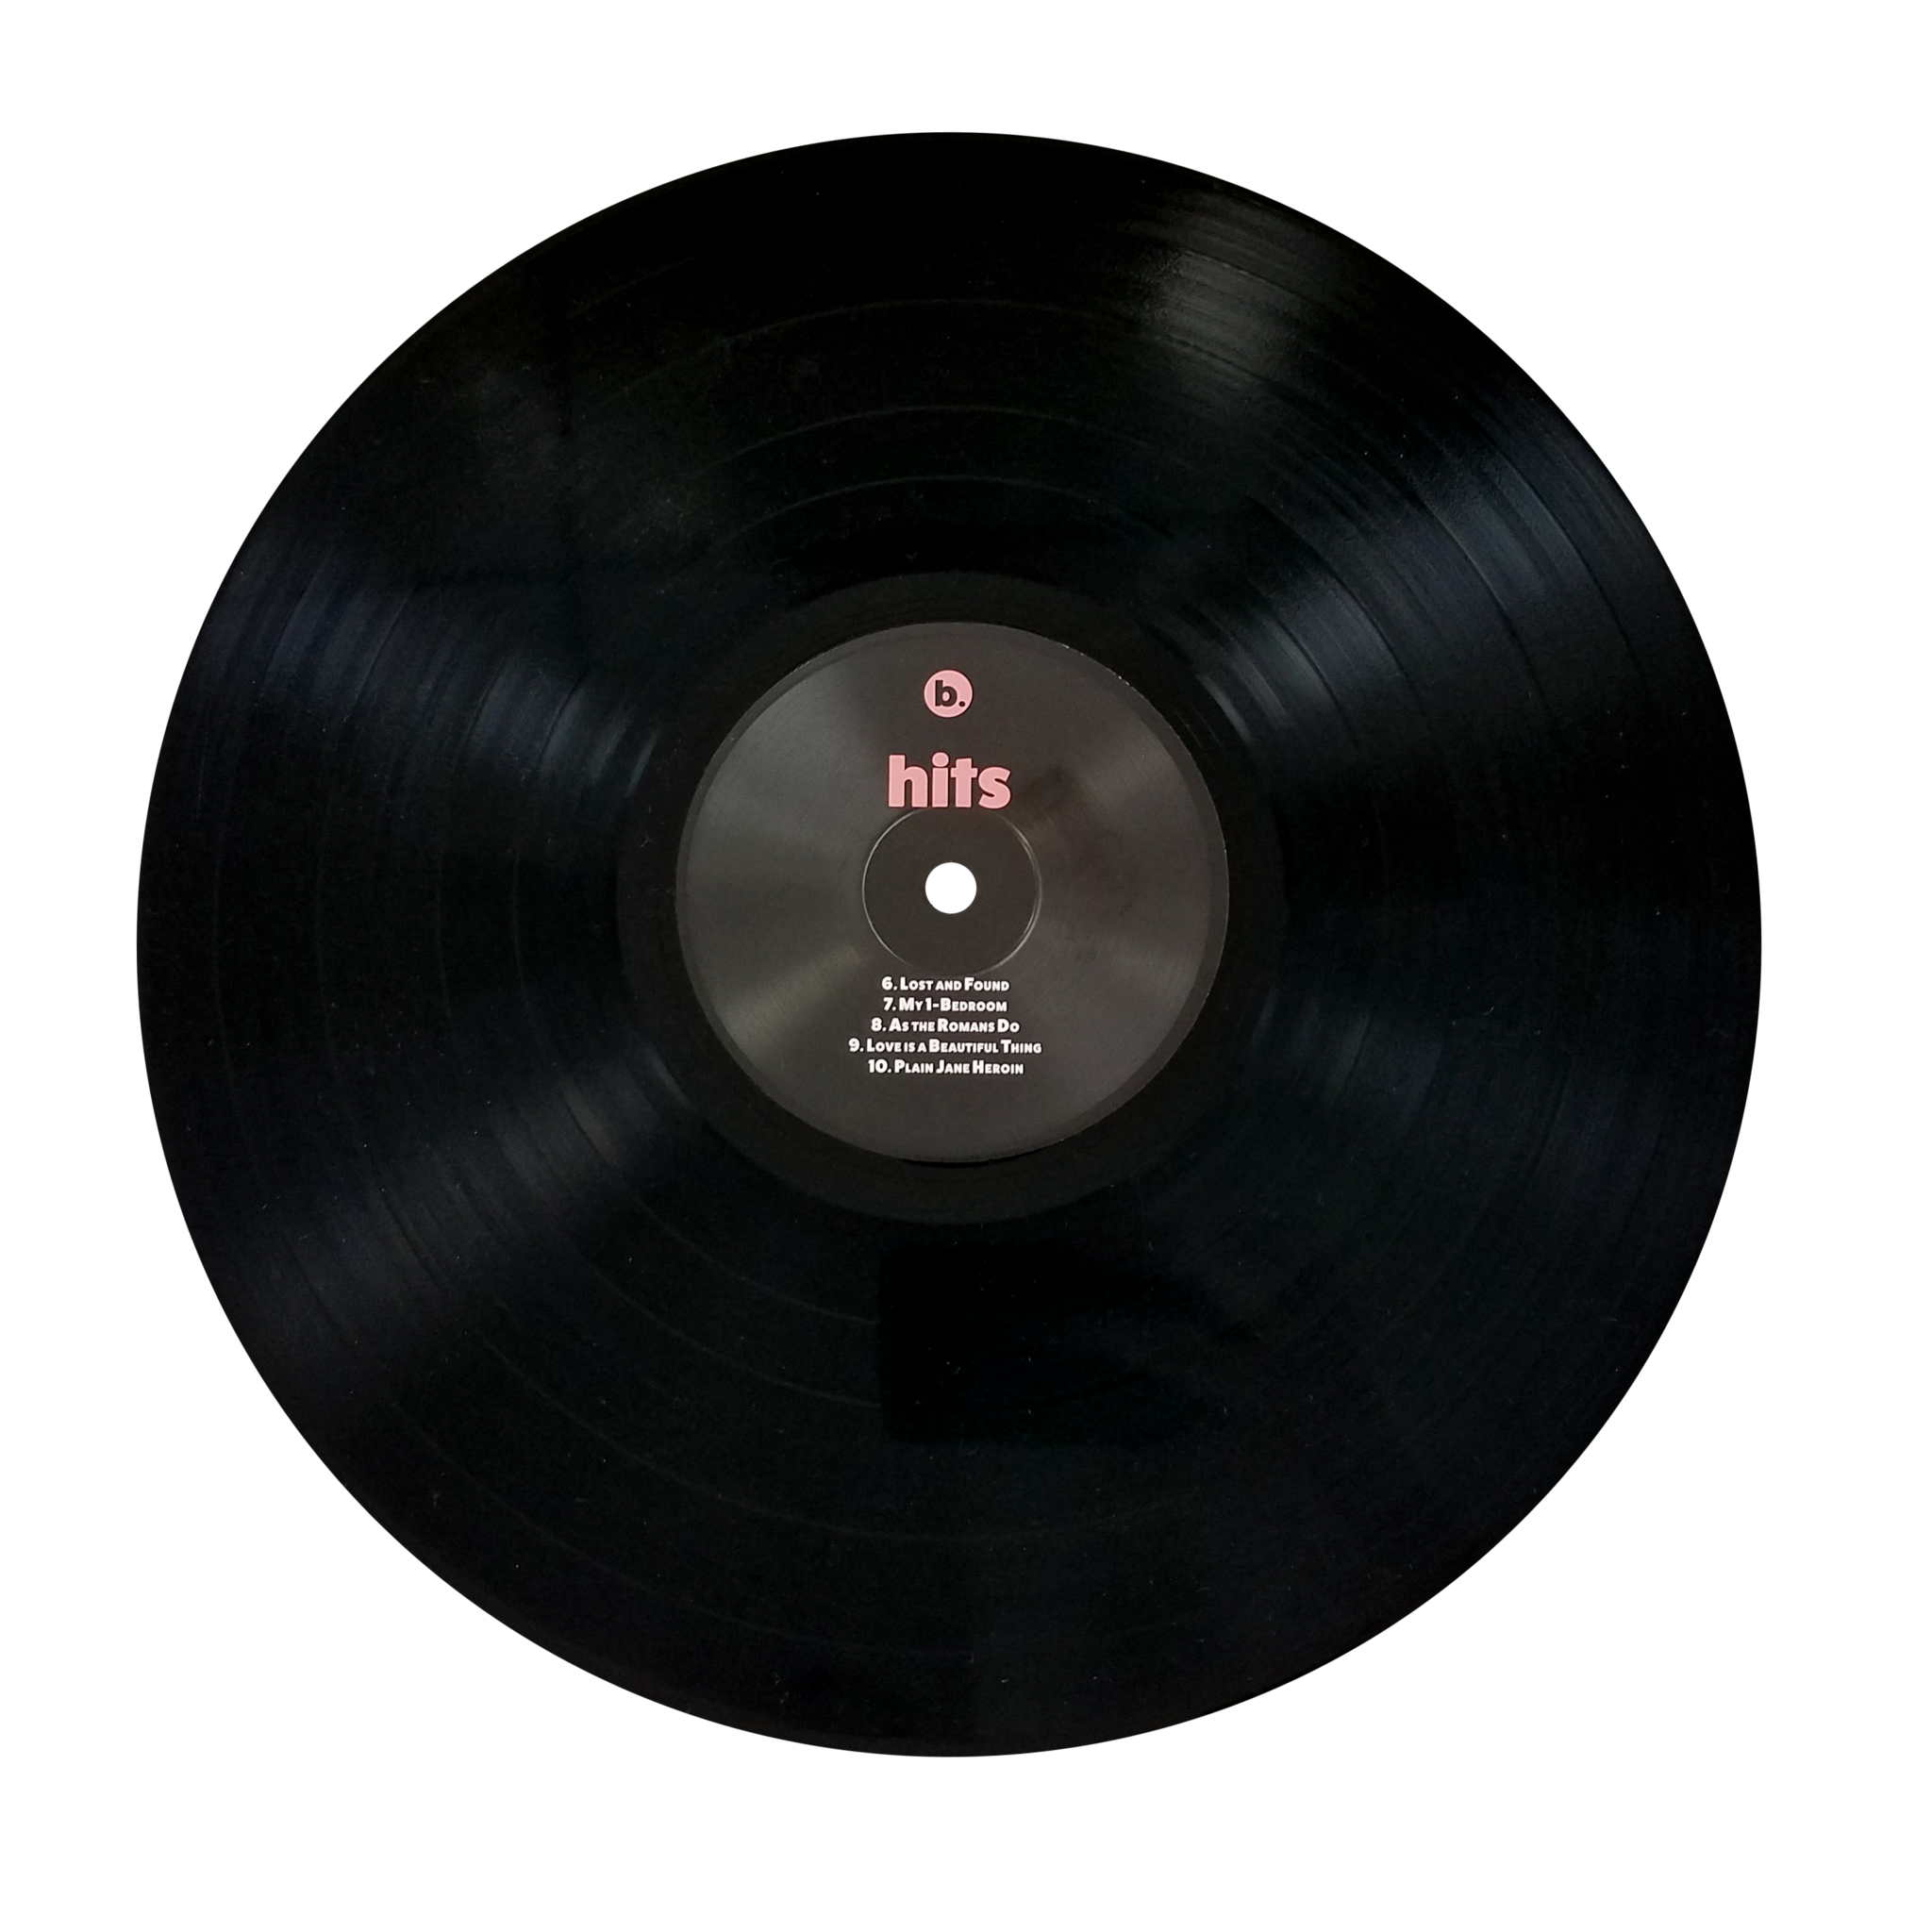 Vinyl Record Png